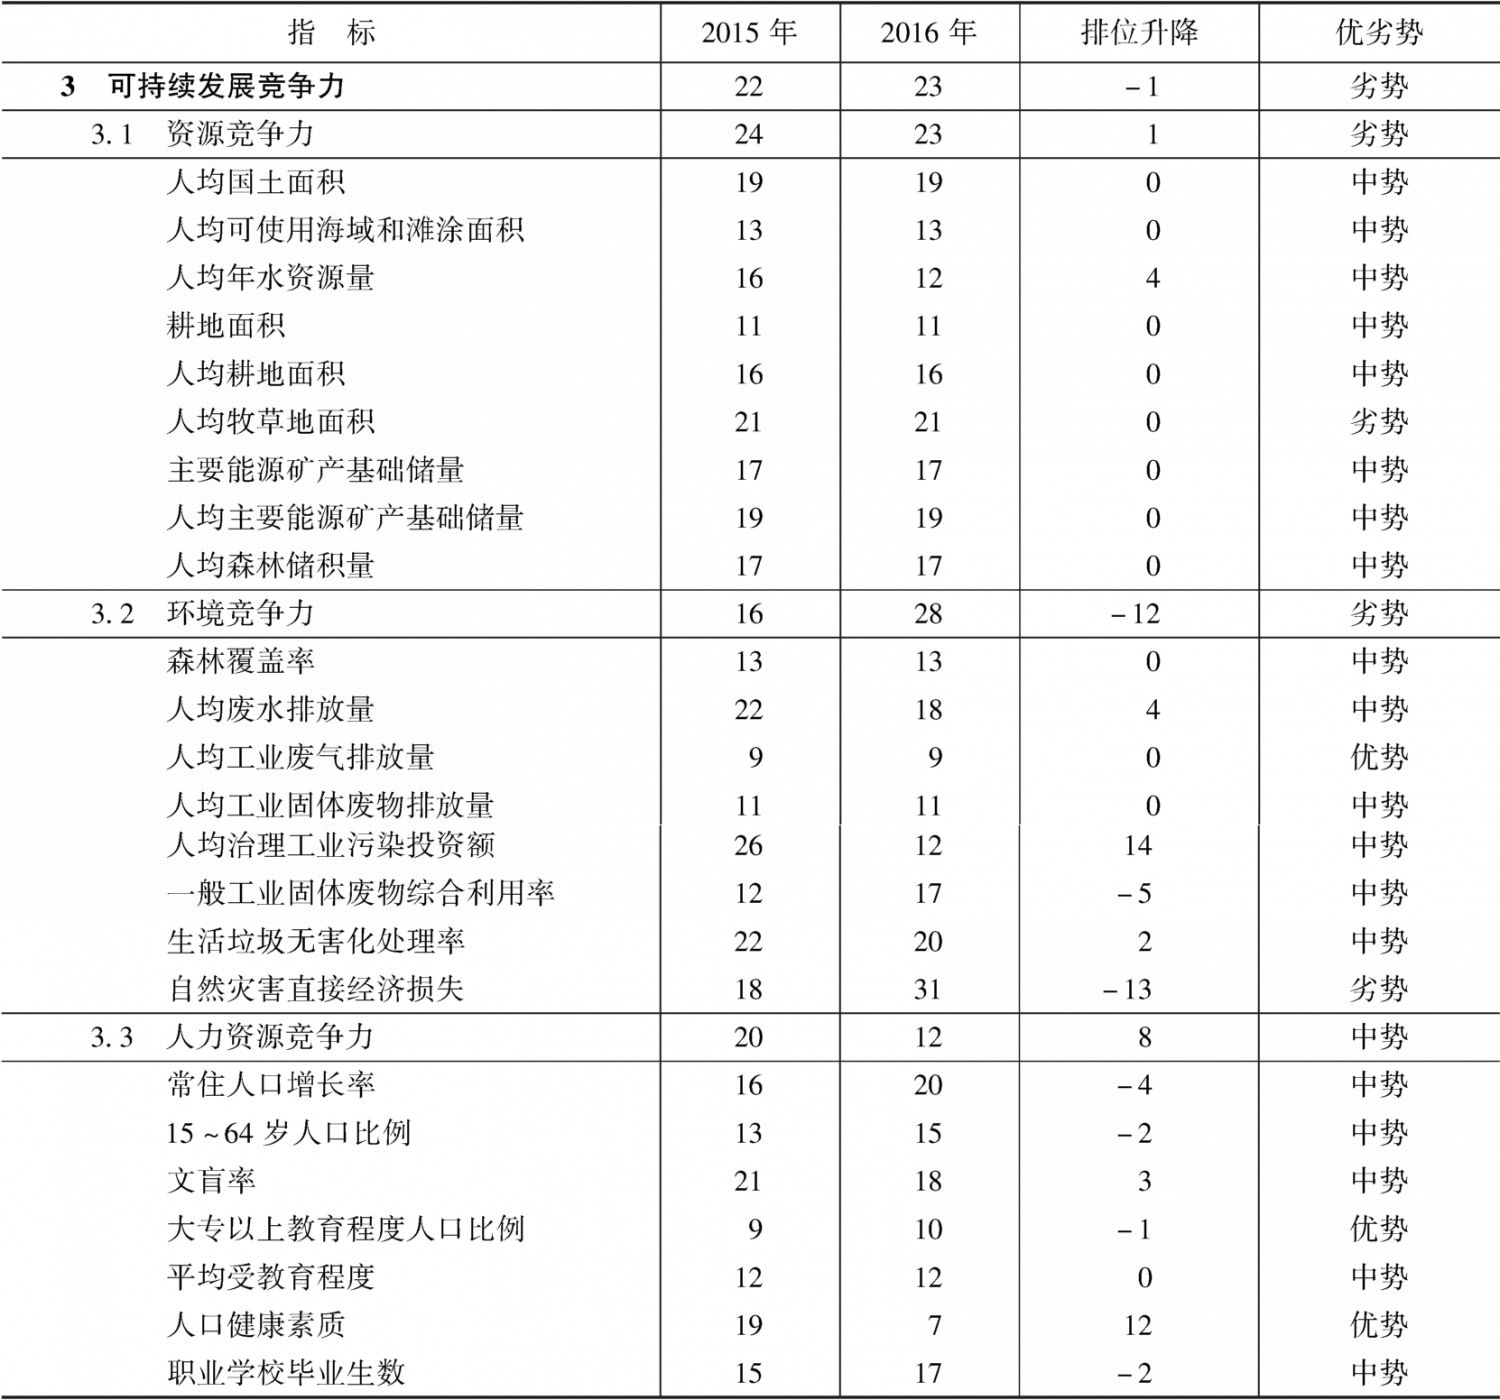 表17-7 2015～2016年湖北省可持续发展竞争力指标组排位及变化趋势